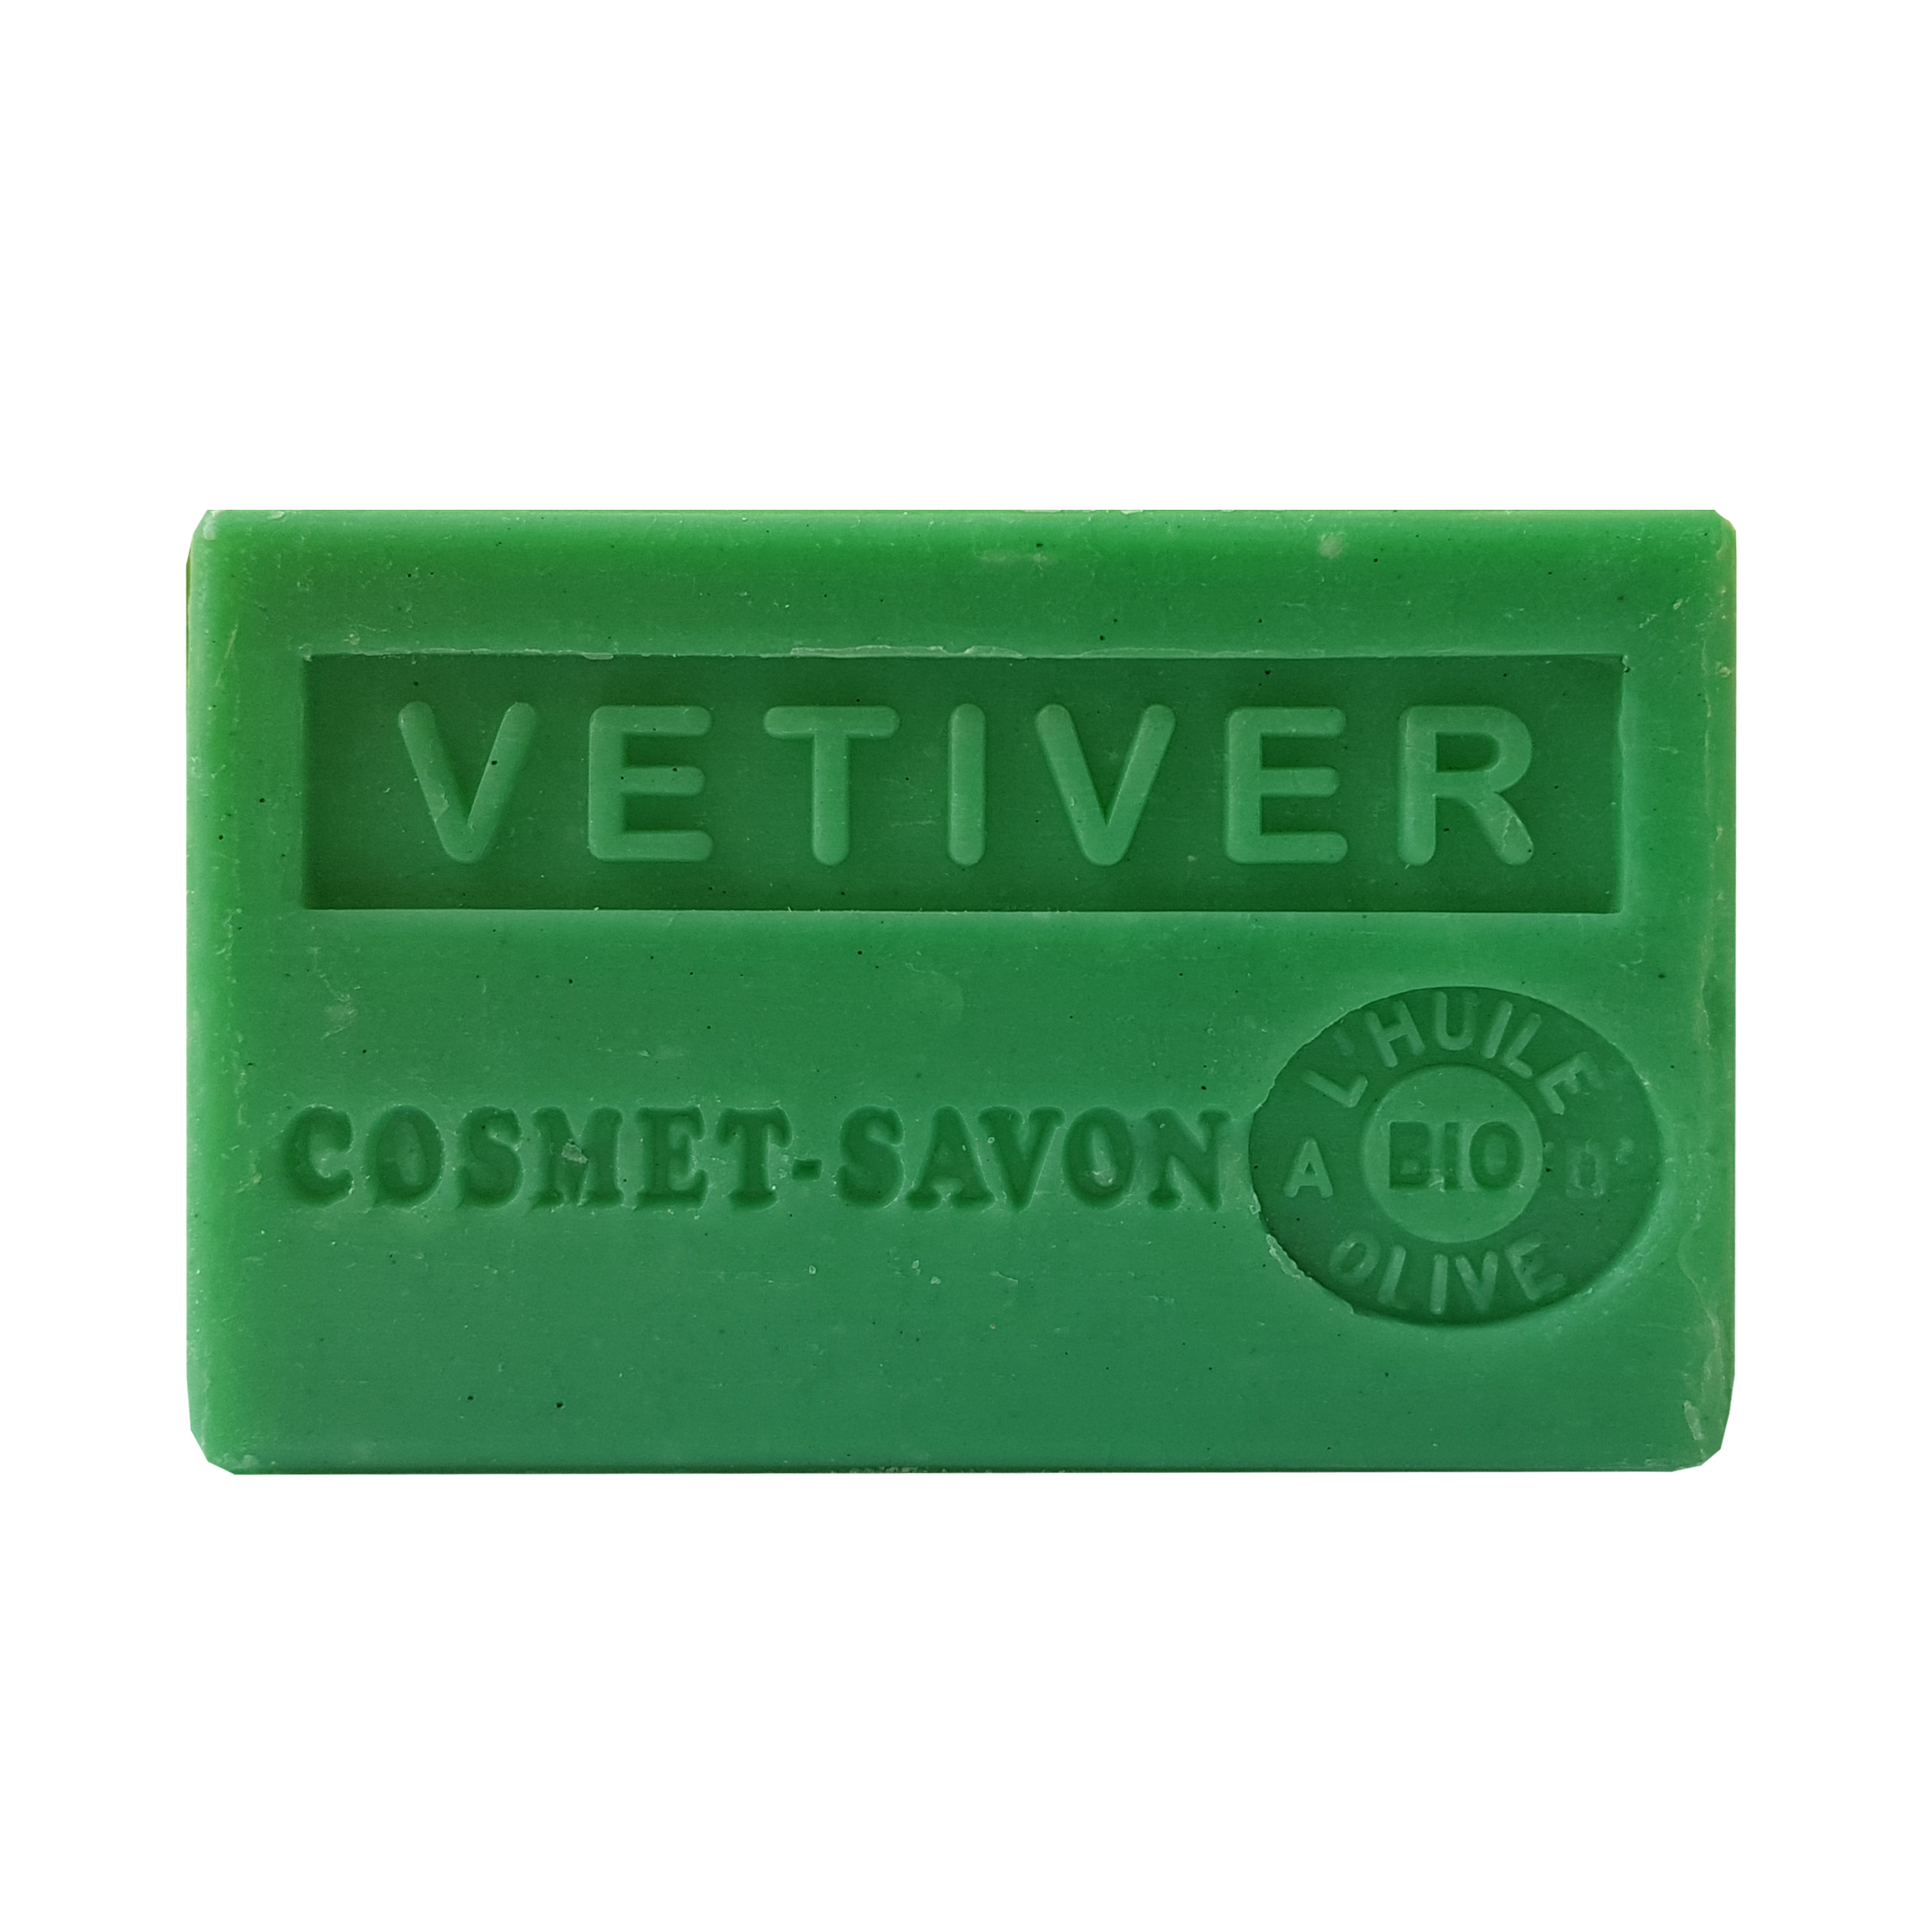 vetiver-savon-125gr-au-beurre-de-karite-bio-cosmet-savon-3665205006812-face-JPEG